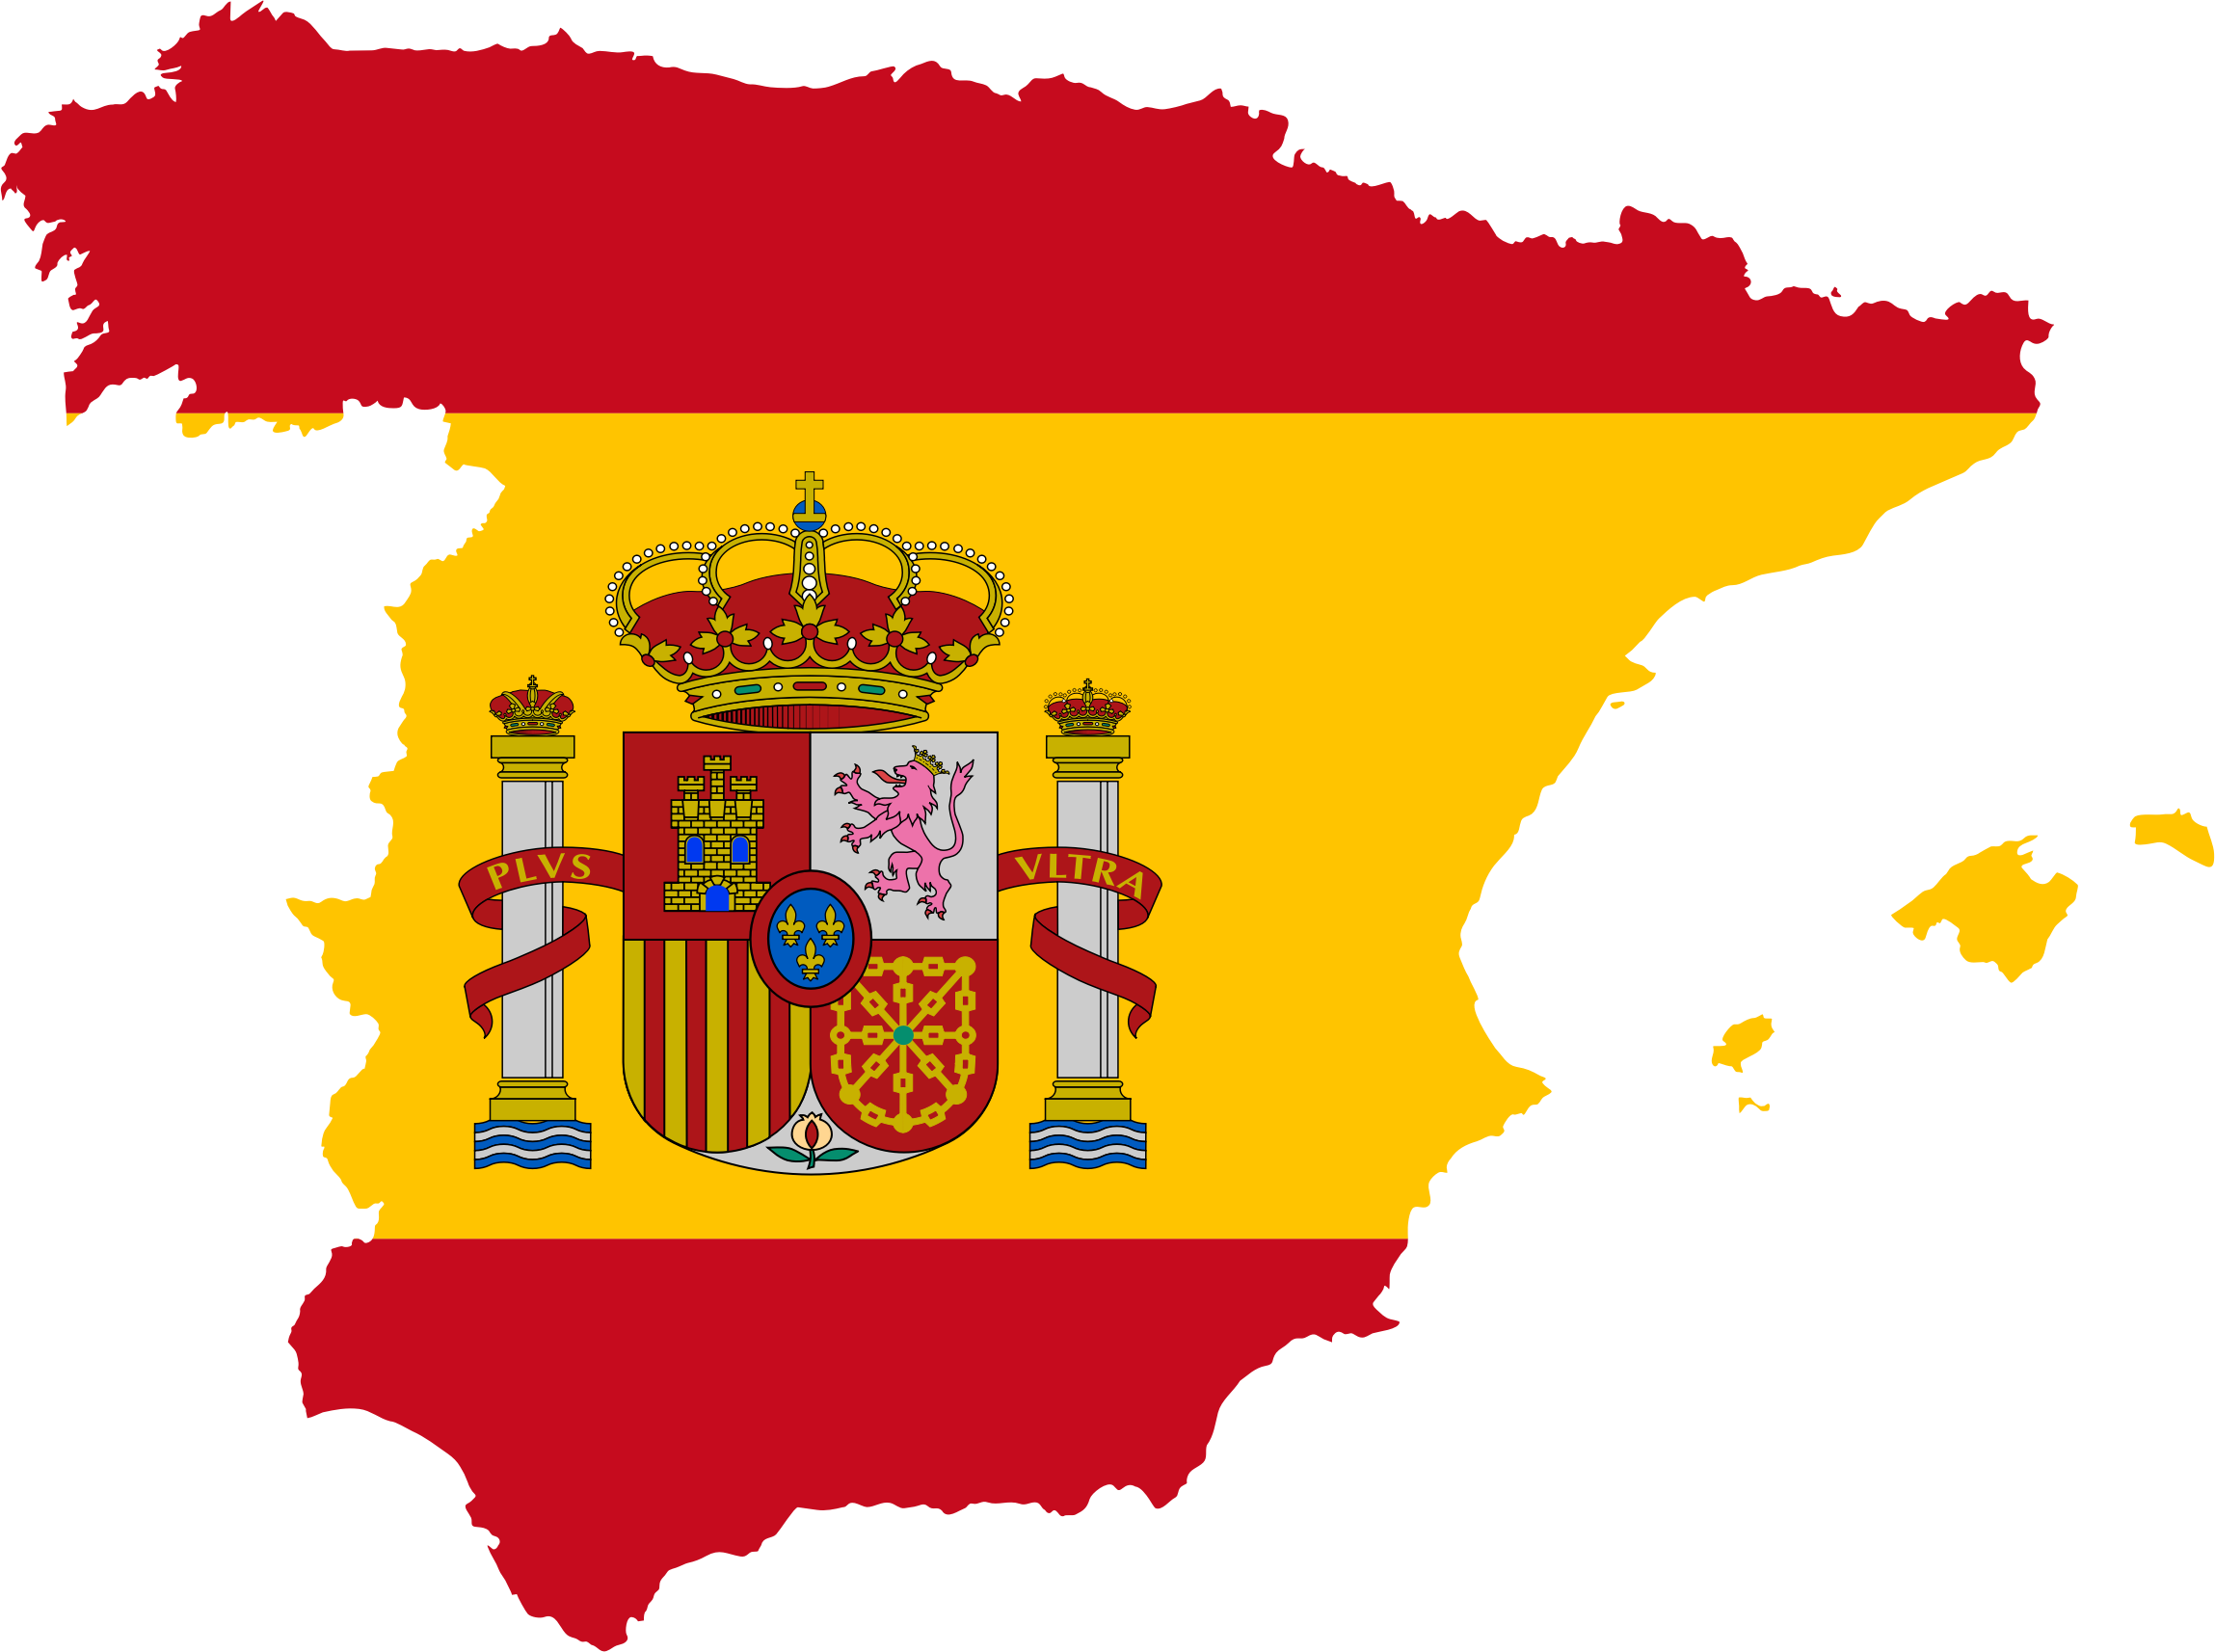 Ισπανία: Ο τομέας των χοιροειδών έκλεισε ένα ιστορικό 2017